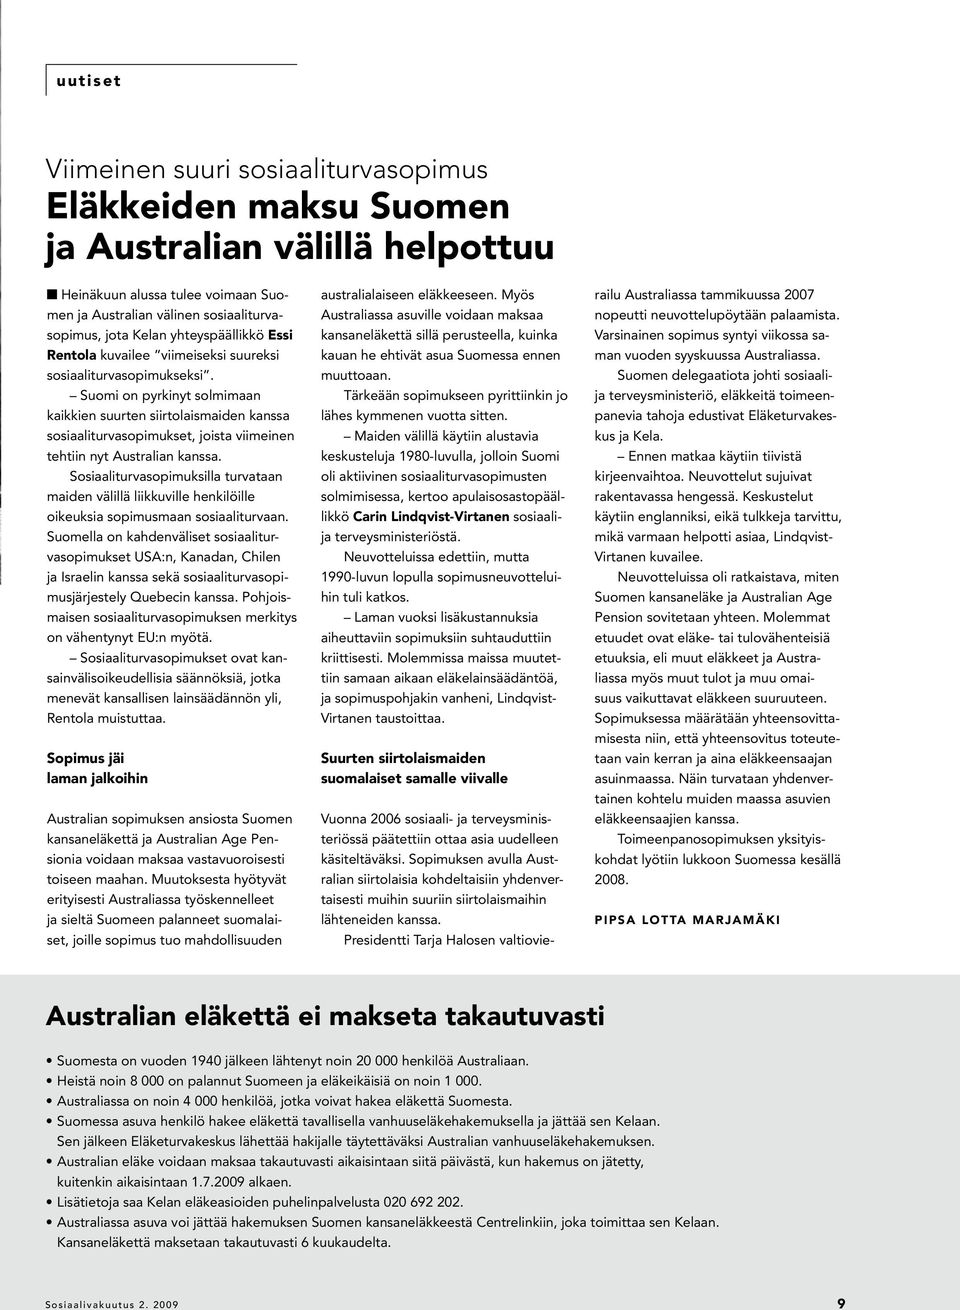 Suomi on pyrkinyt solmimaan kaikkien suurten siirtolaismaiden kanssa sosiaaliturvasopimukset, joista viimeinen tehtiin nyt Australian kanssa.